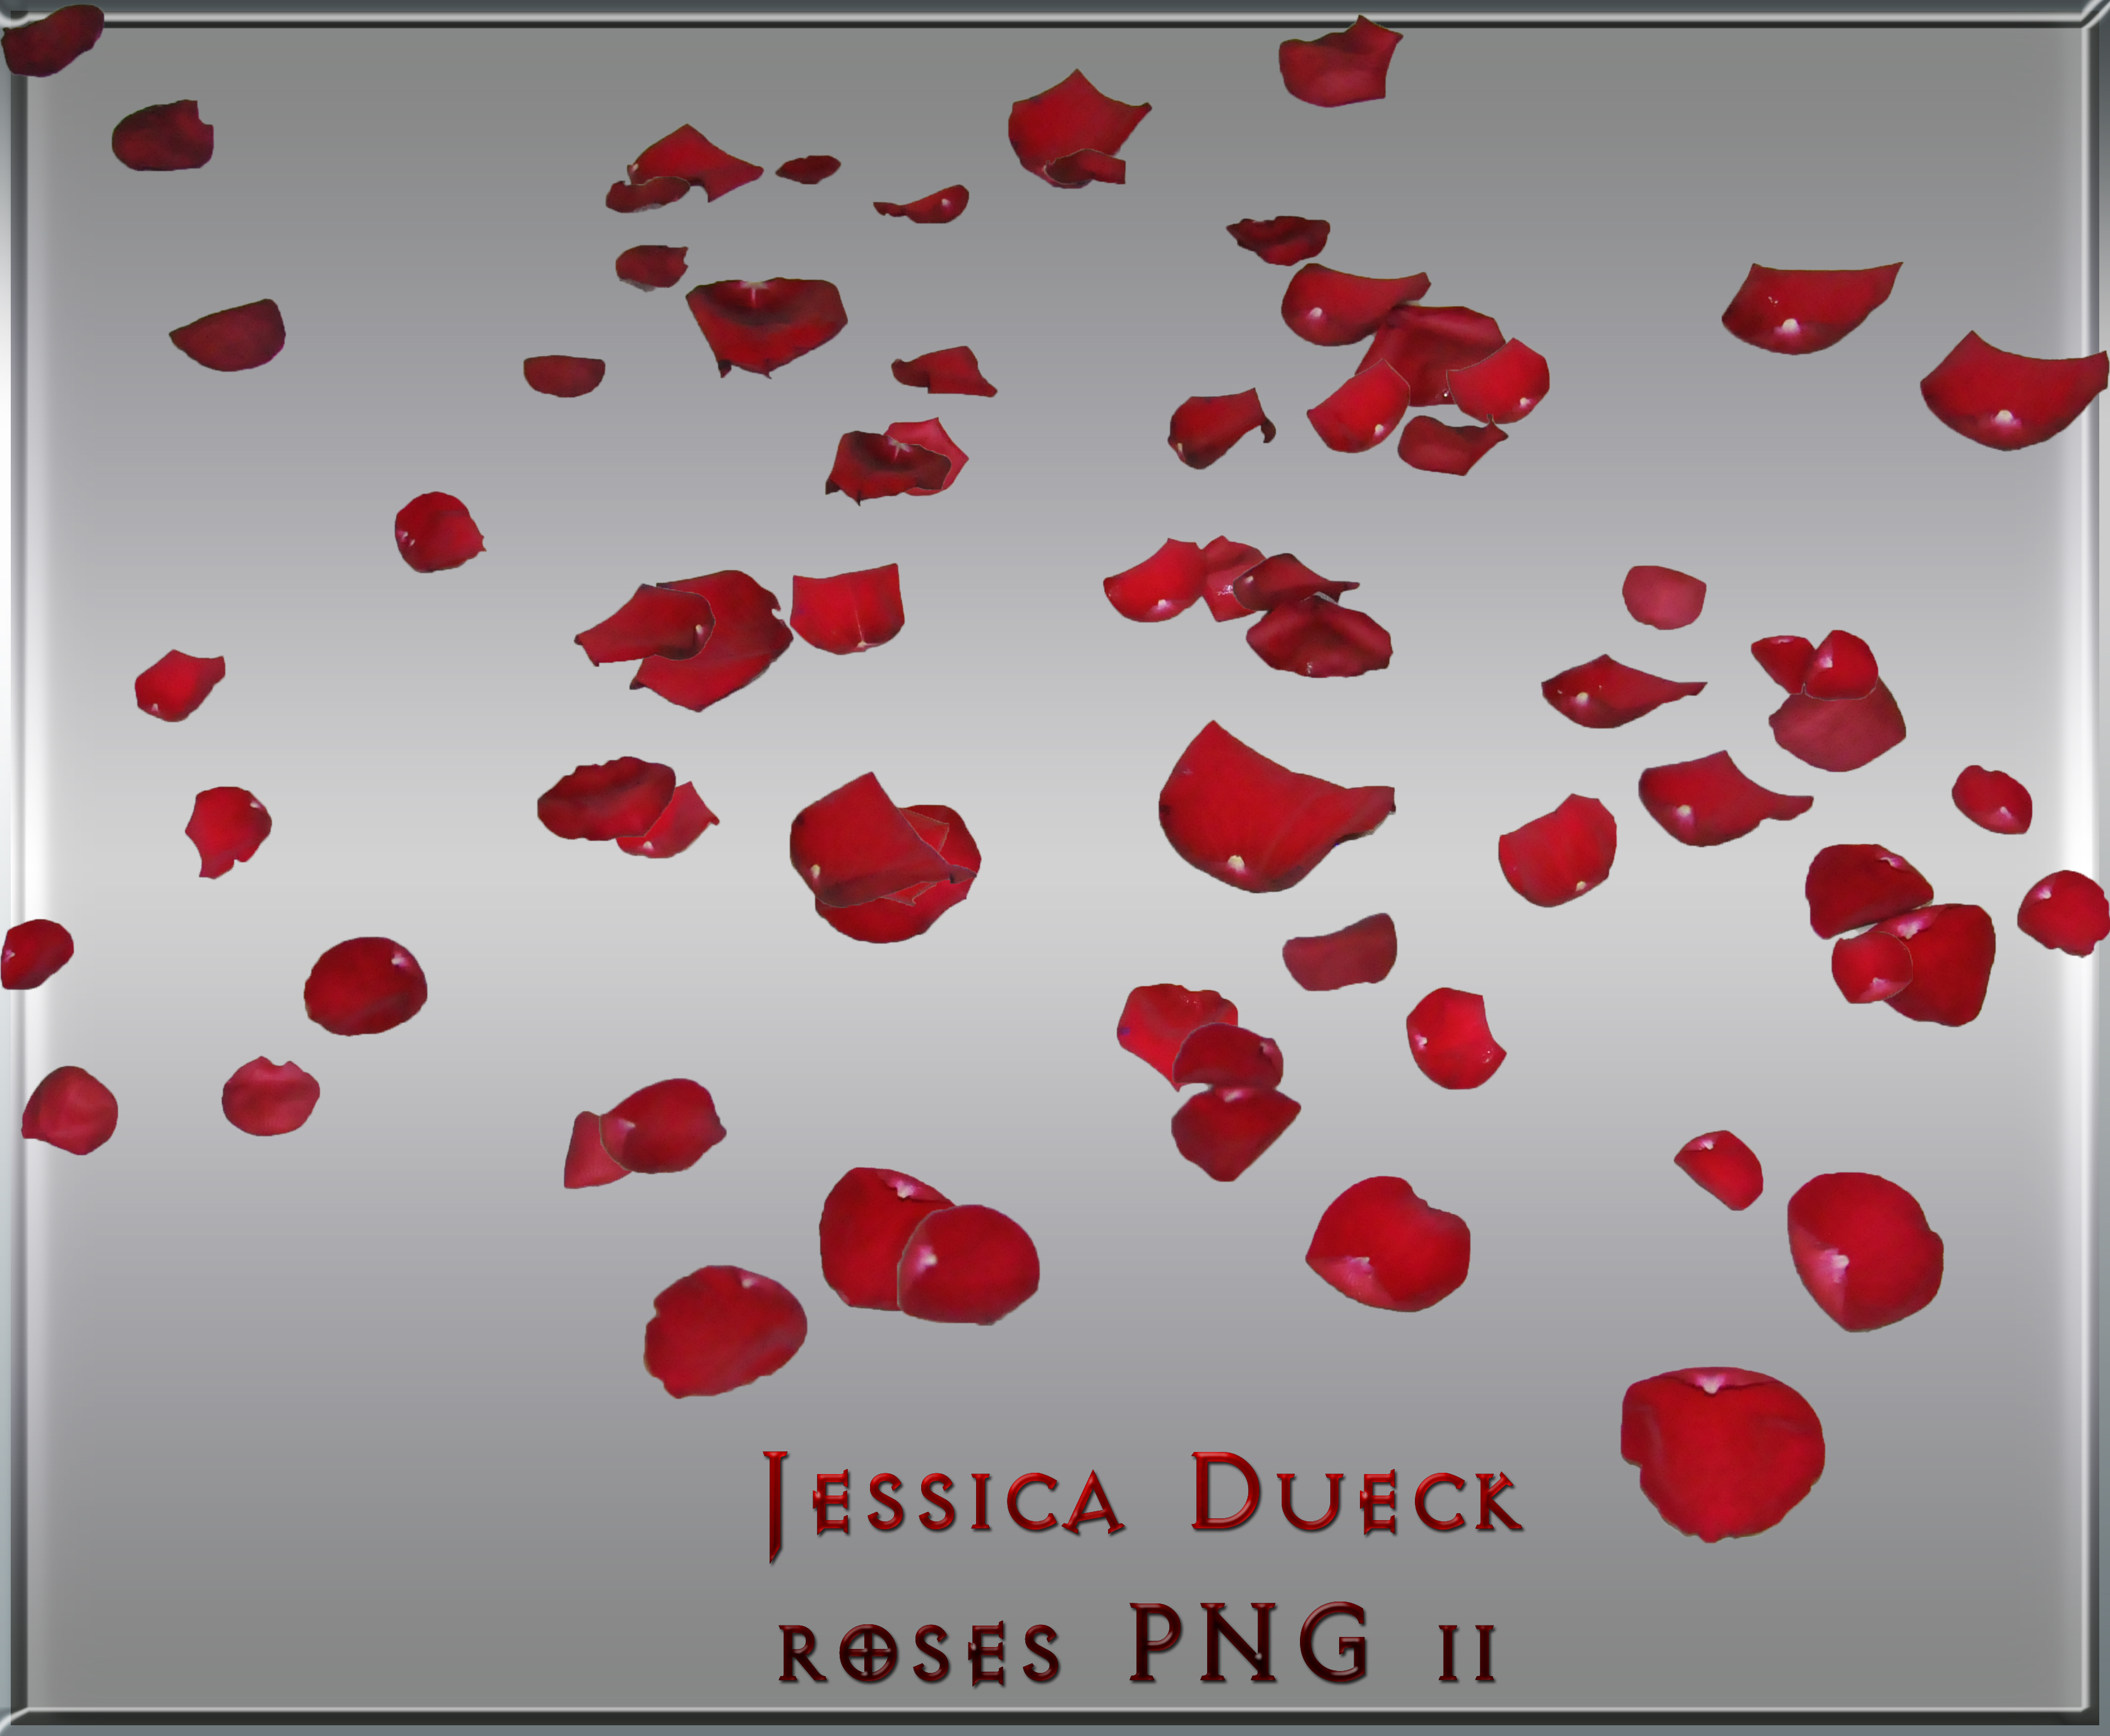 Red Rose Petals Falling